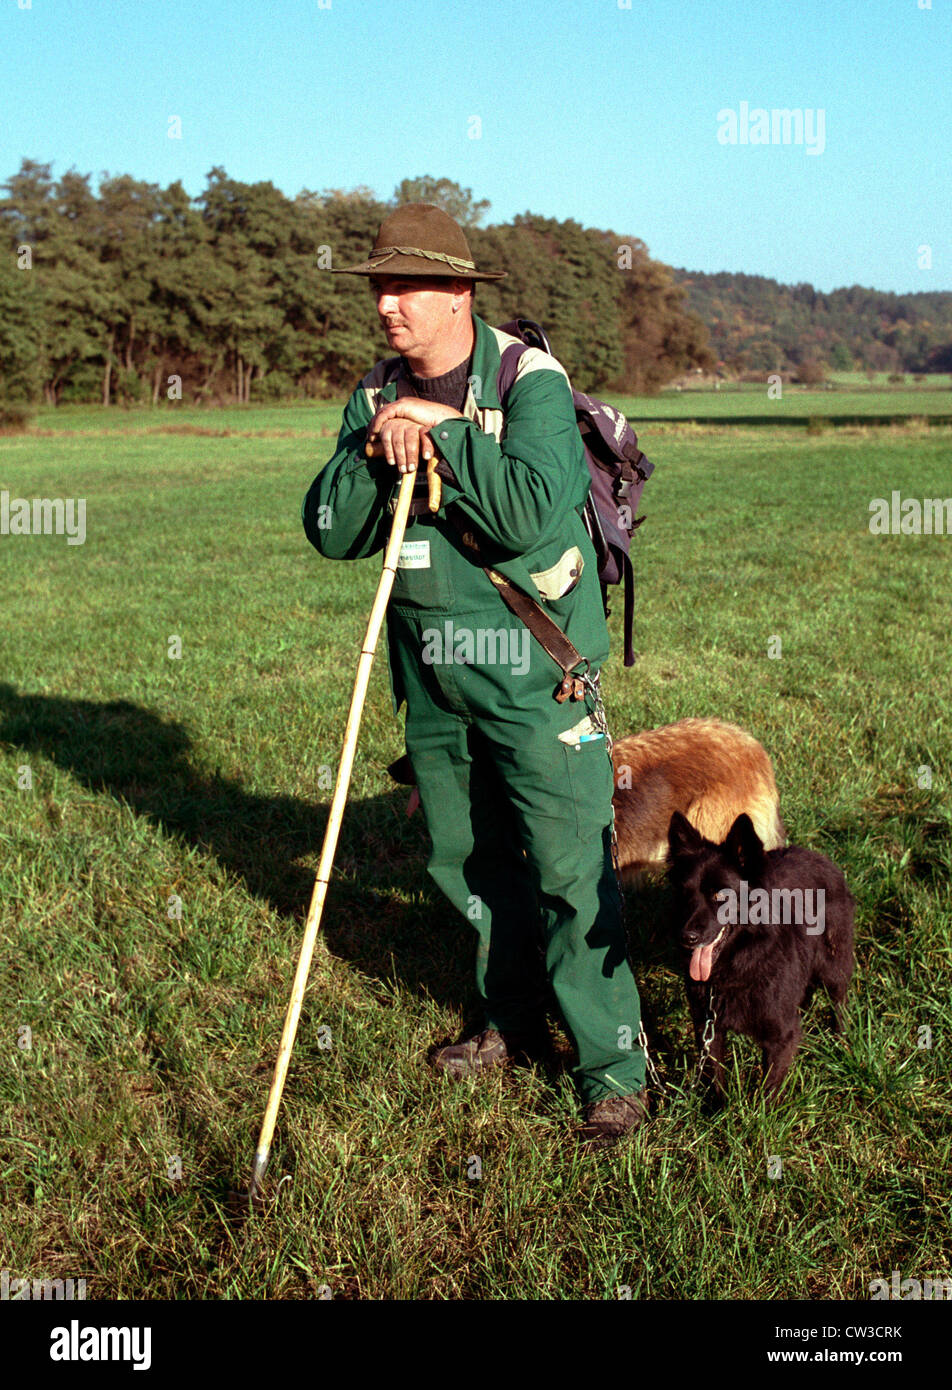 Themar, un berger avec ses chiens Schaefer Banque D'Images